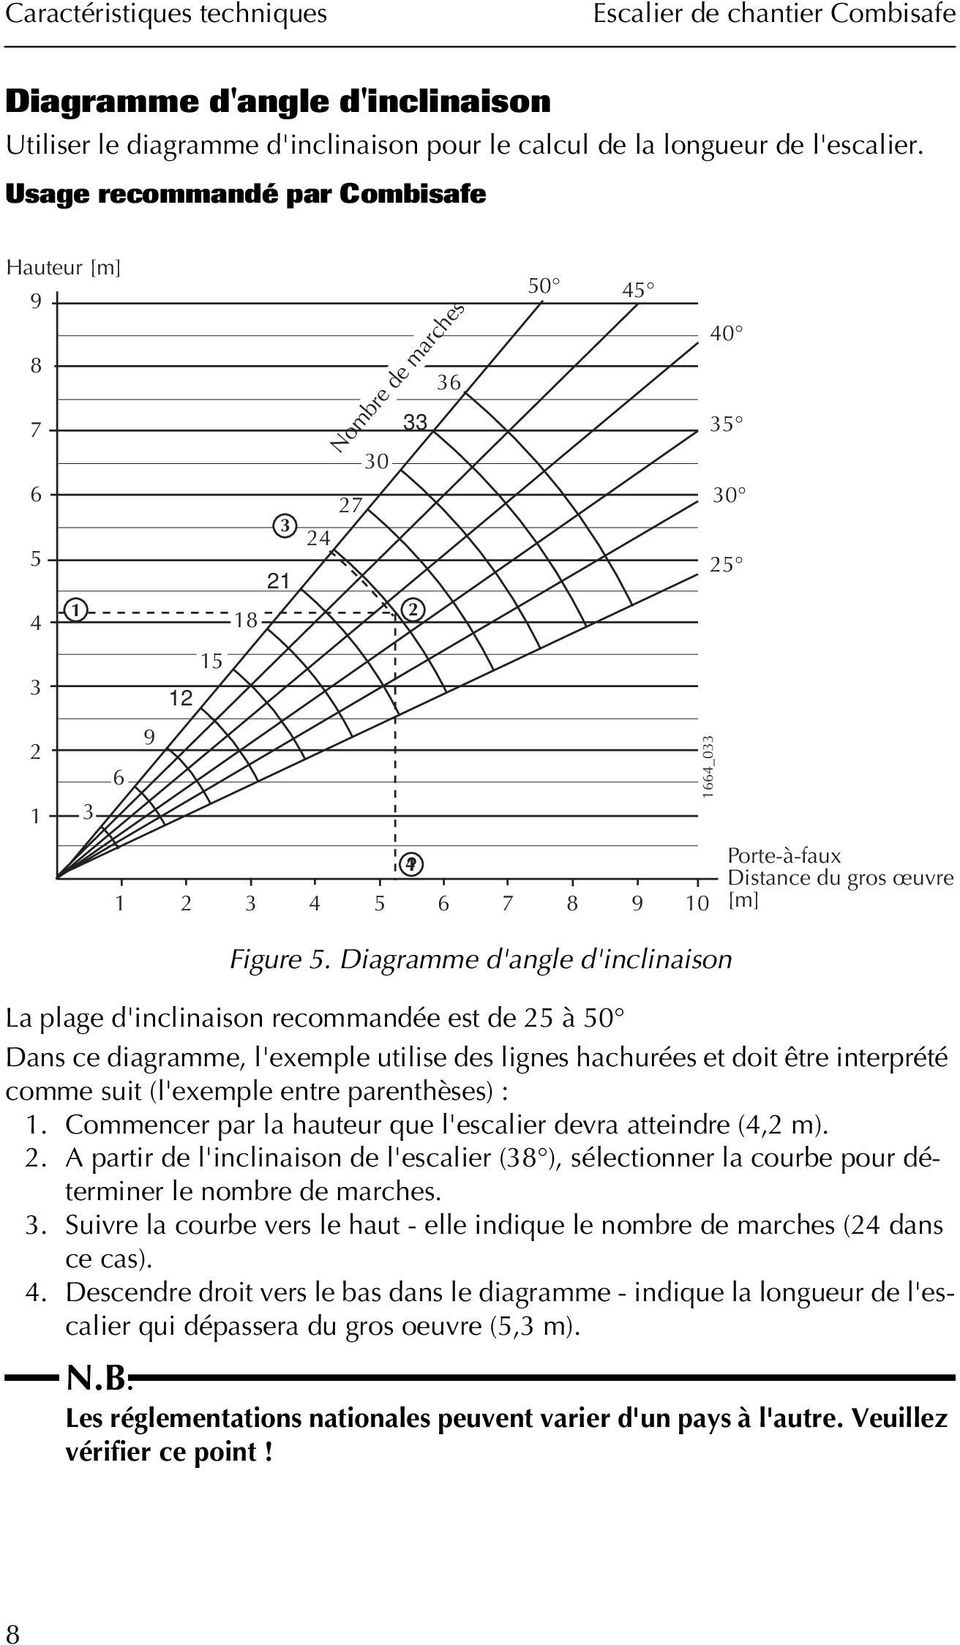 Diagramme d'angle d'inclinaison La plage d'inclinaison recommandée est de 25 à 50 Dans ce diagramme, l'exemple utilise des lignes hachurées et doit être interprété comme suit (l'exemple entre